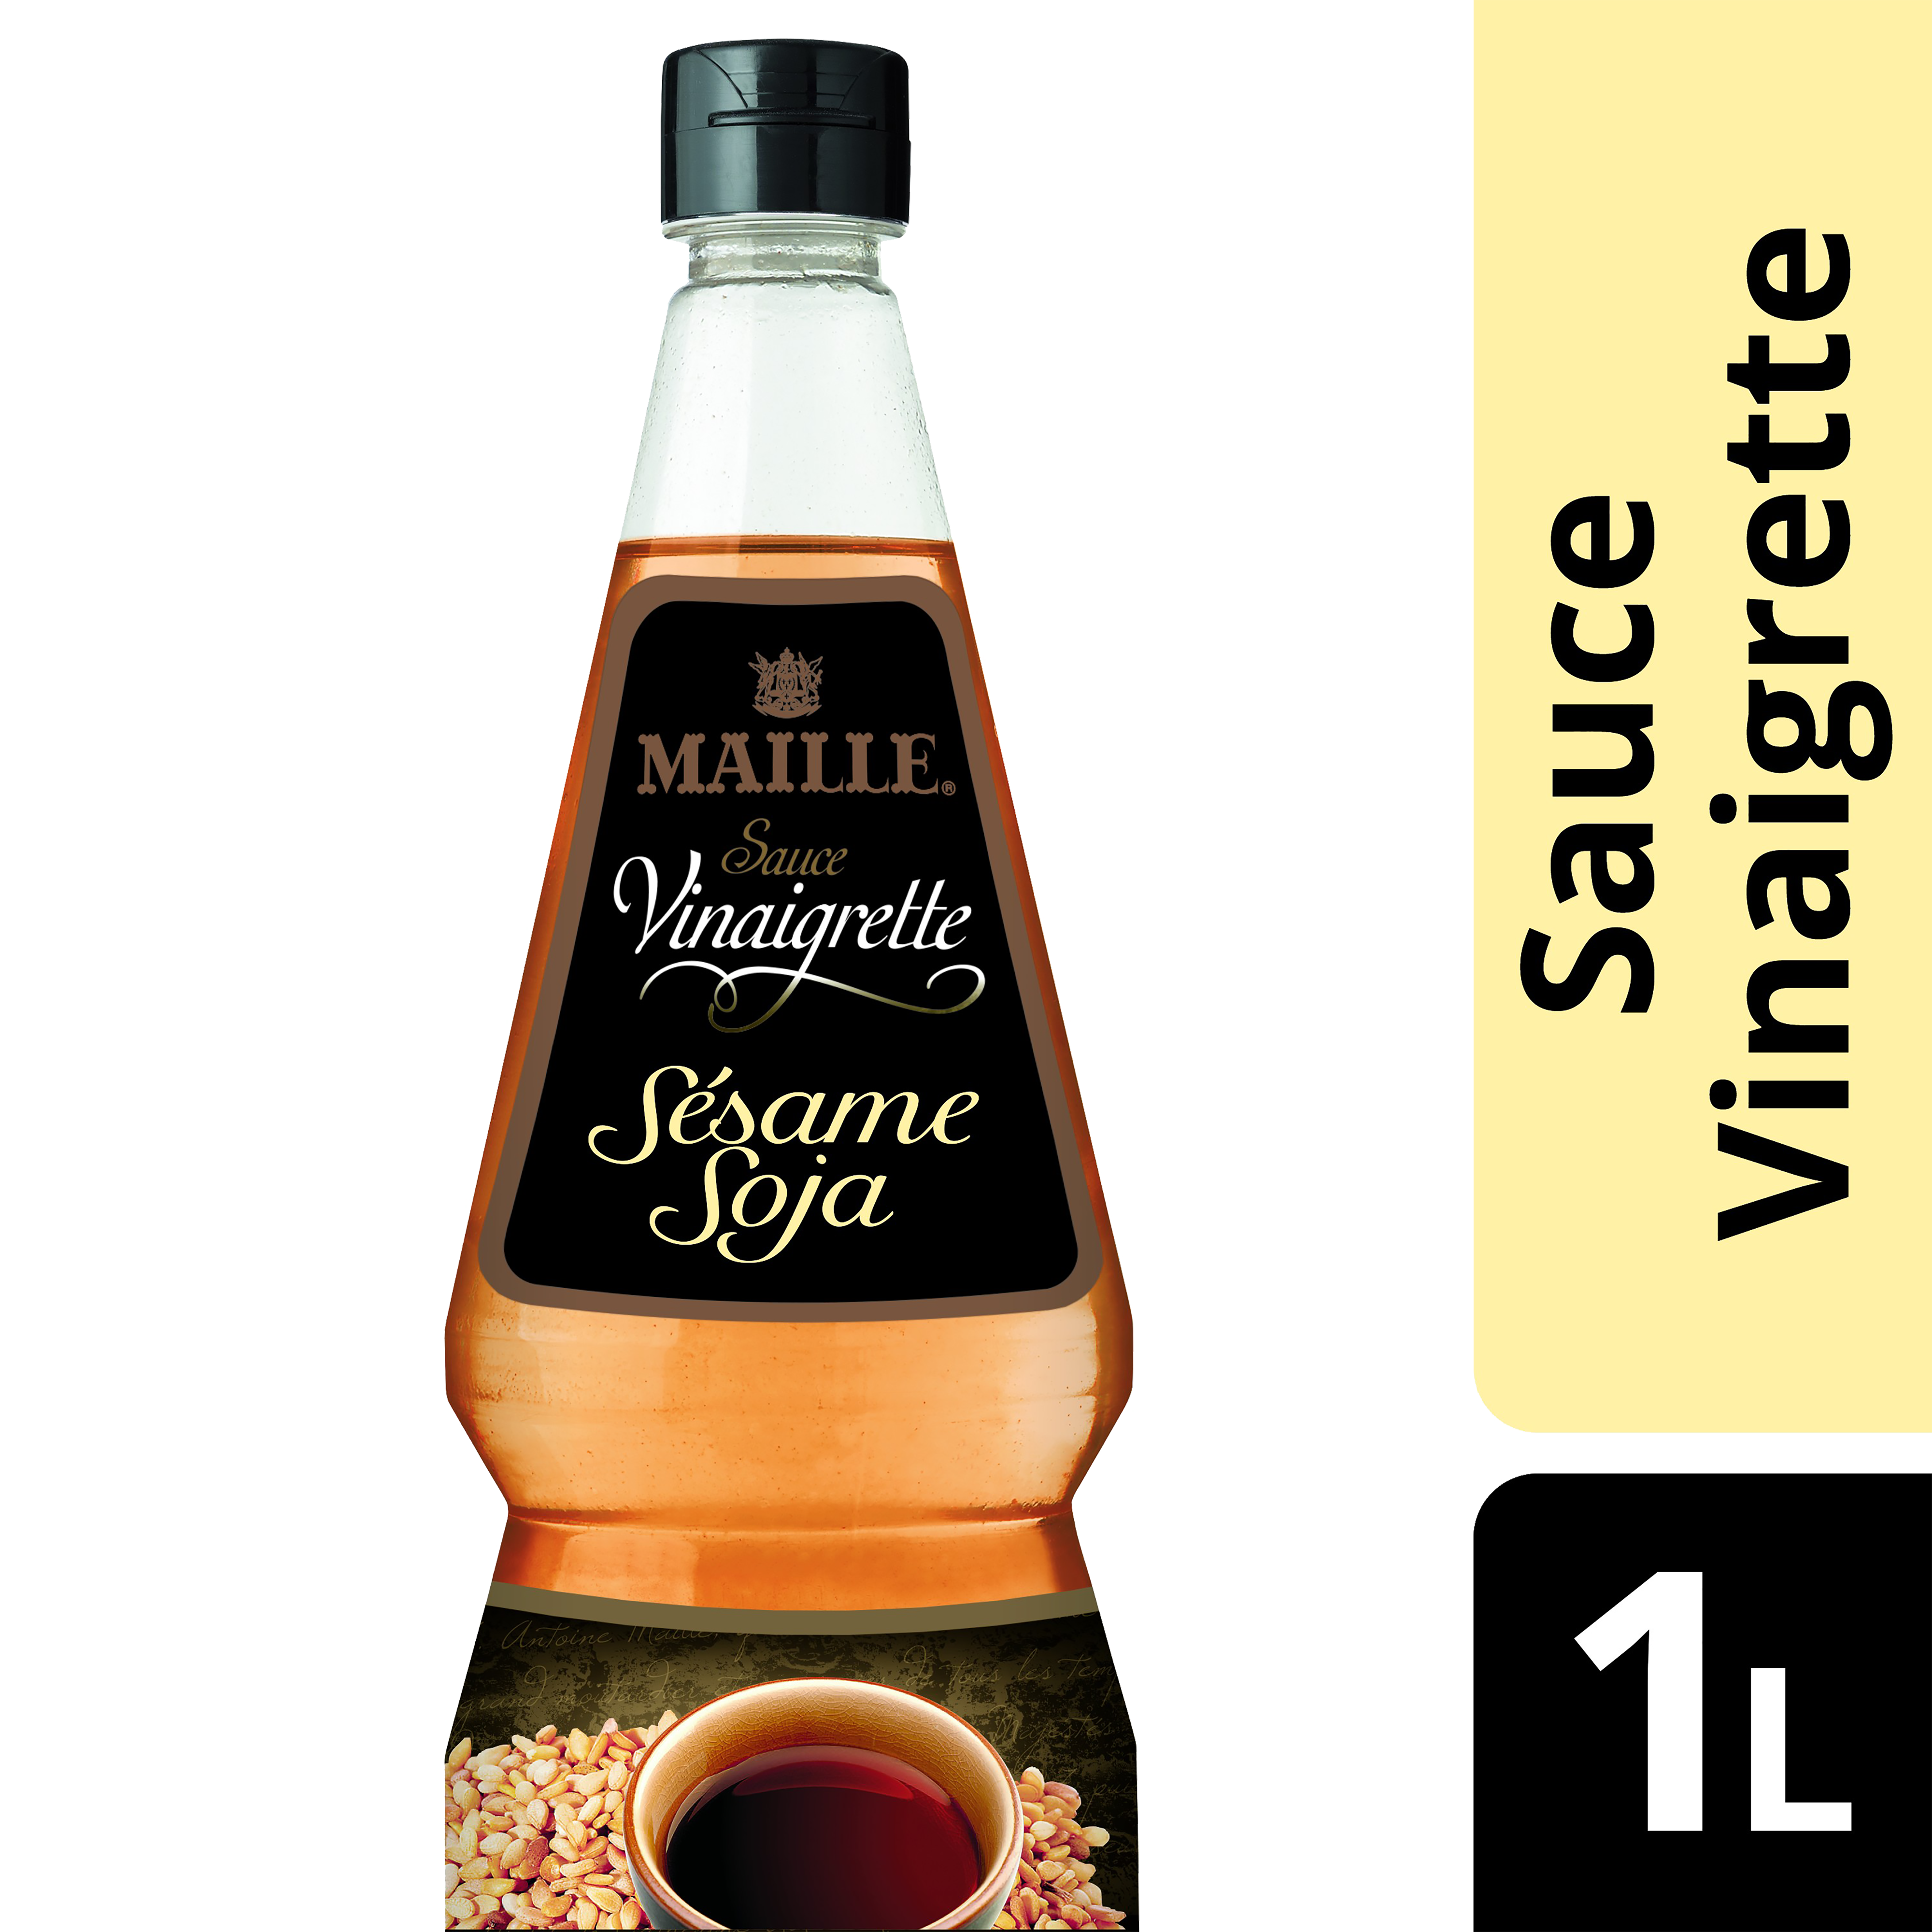 Maille Sauce Vinaigrette Sésame-Soja 1L - Nos vinaigrettes faites à partir d'ingrédients de qualités offrent des saveurs uniques